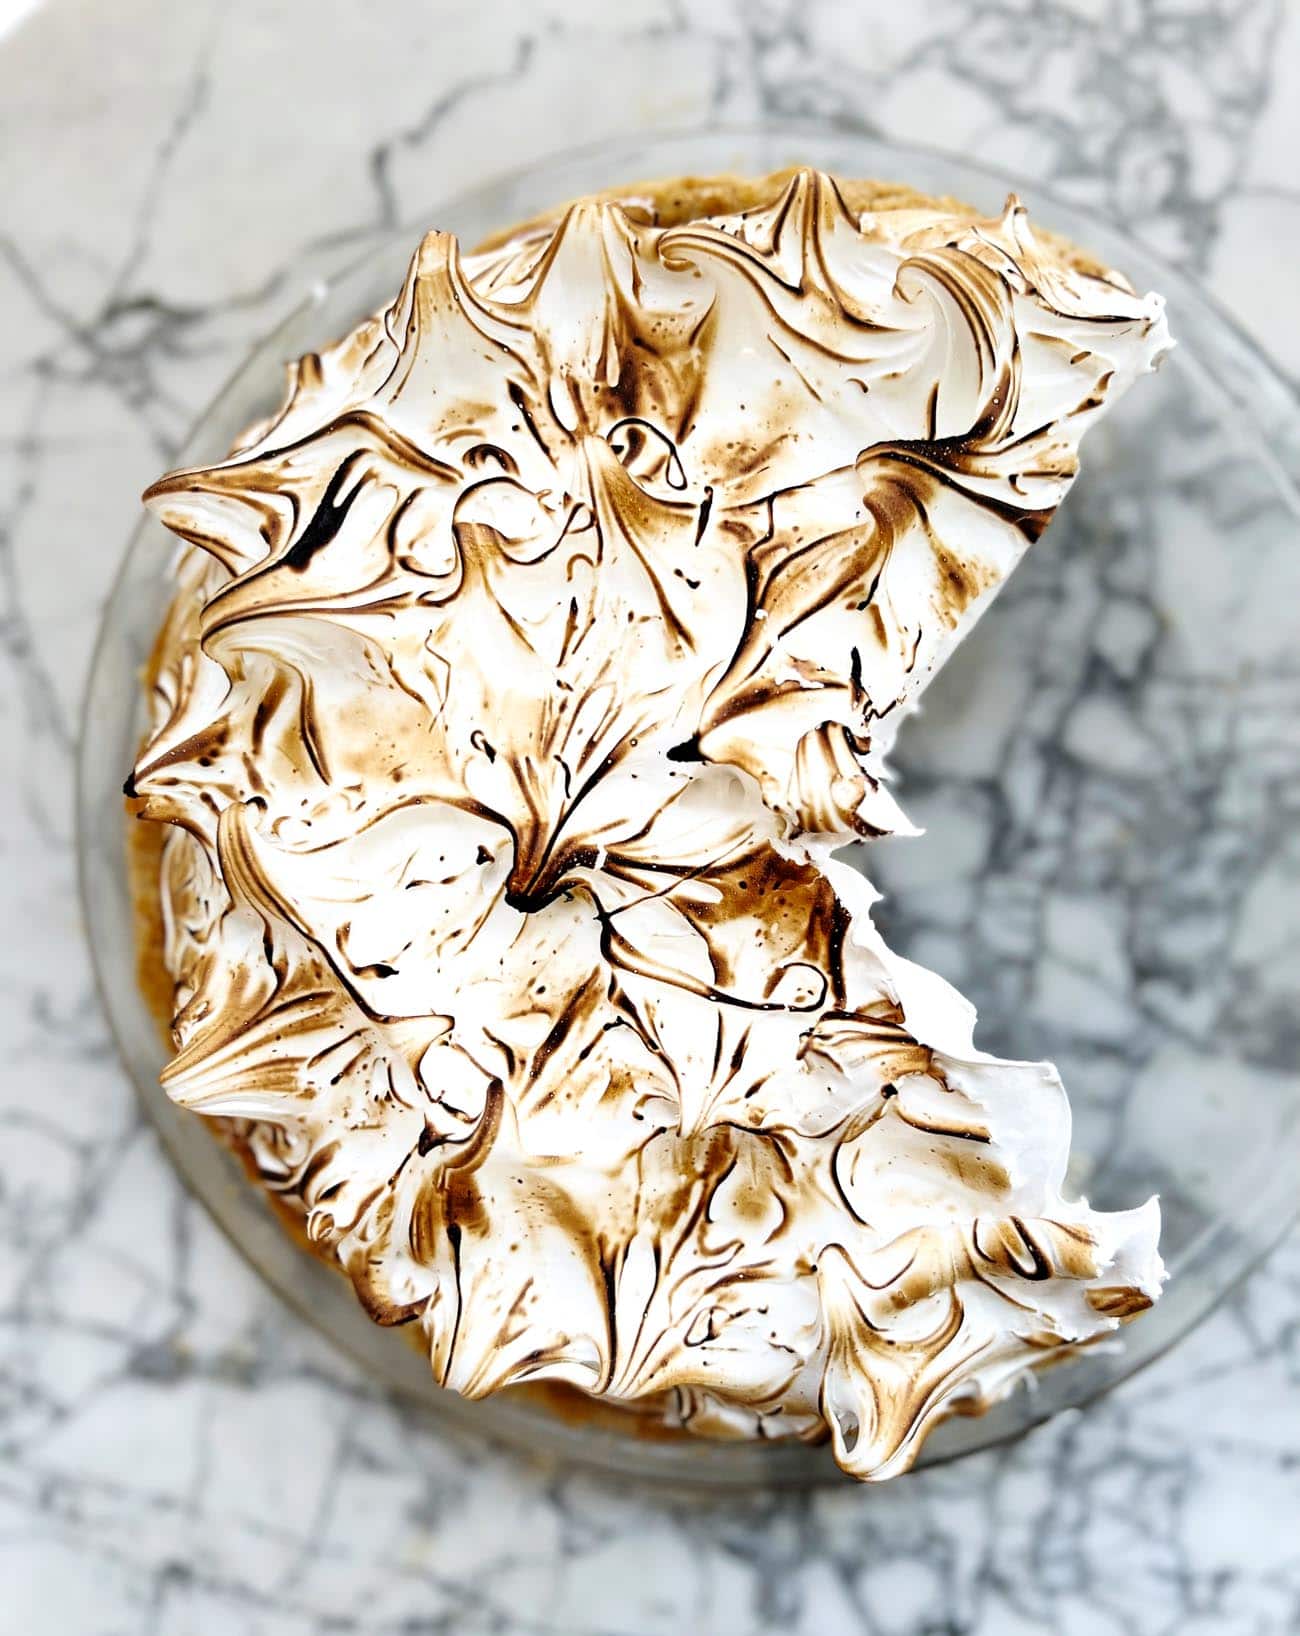 chocolate meringue pie on marble board